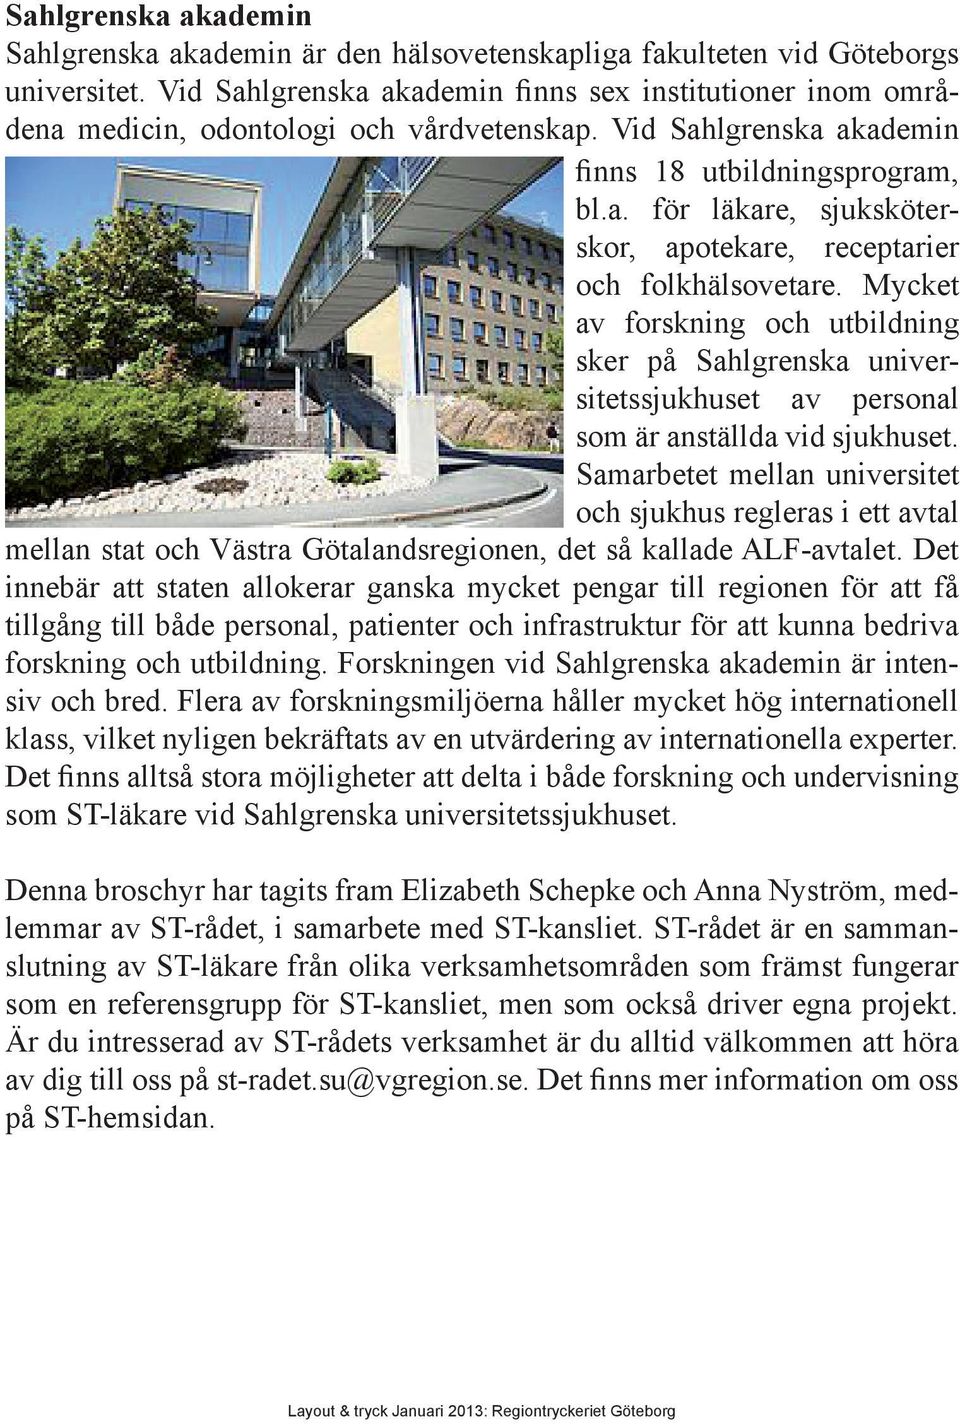 Mycket av forskning och utbildning sker på Sahlgrenska universitetssjukhuset av personal som är anställda vid sjukhuset.